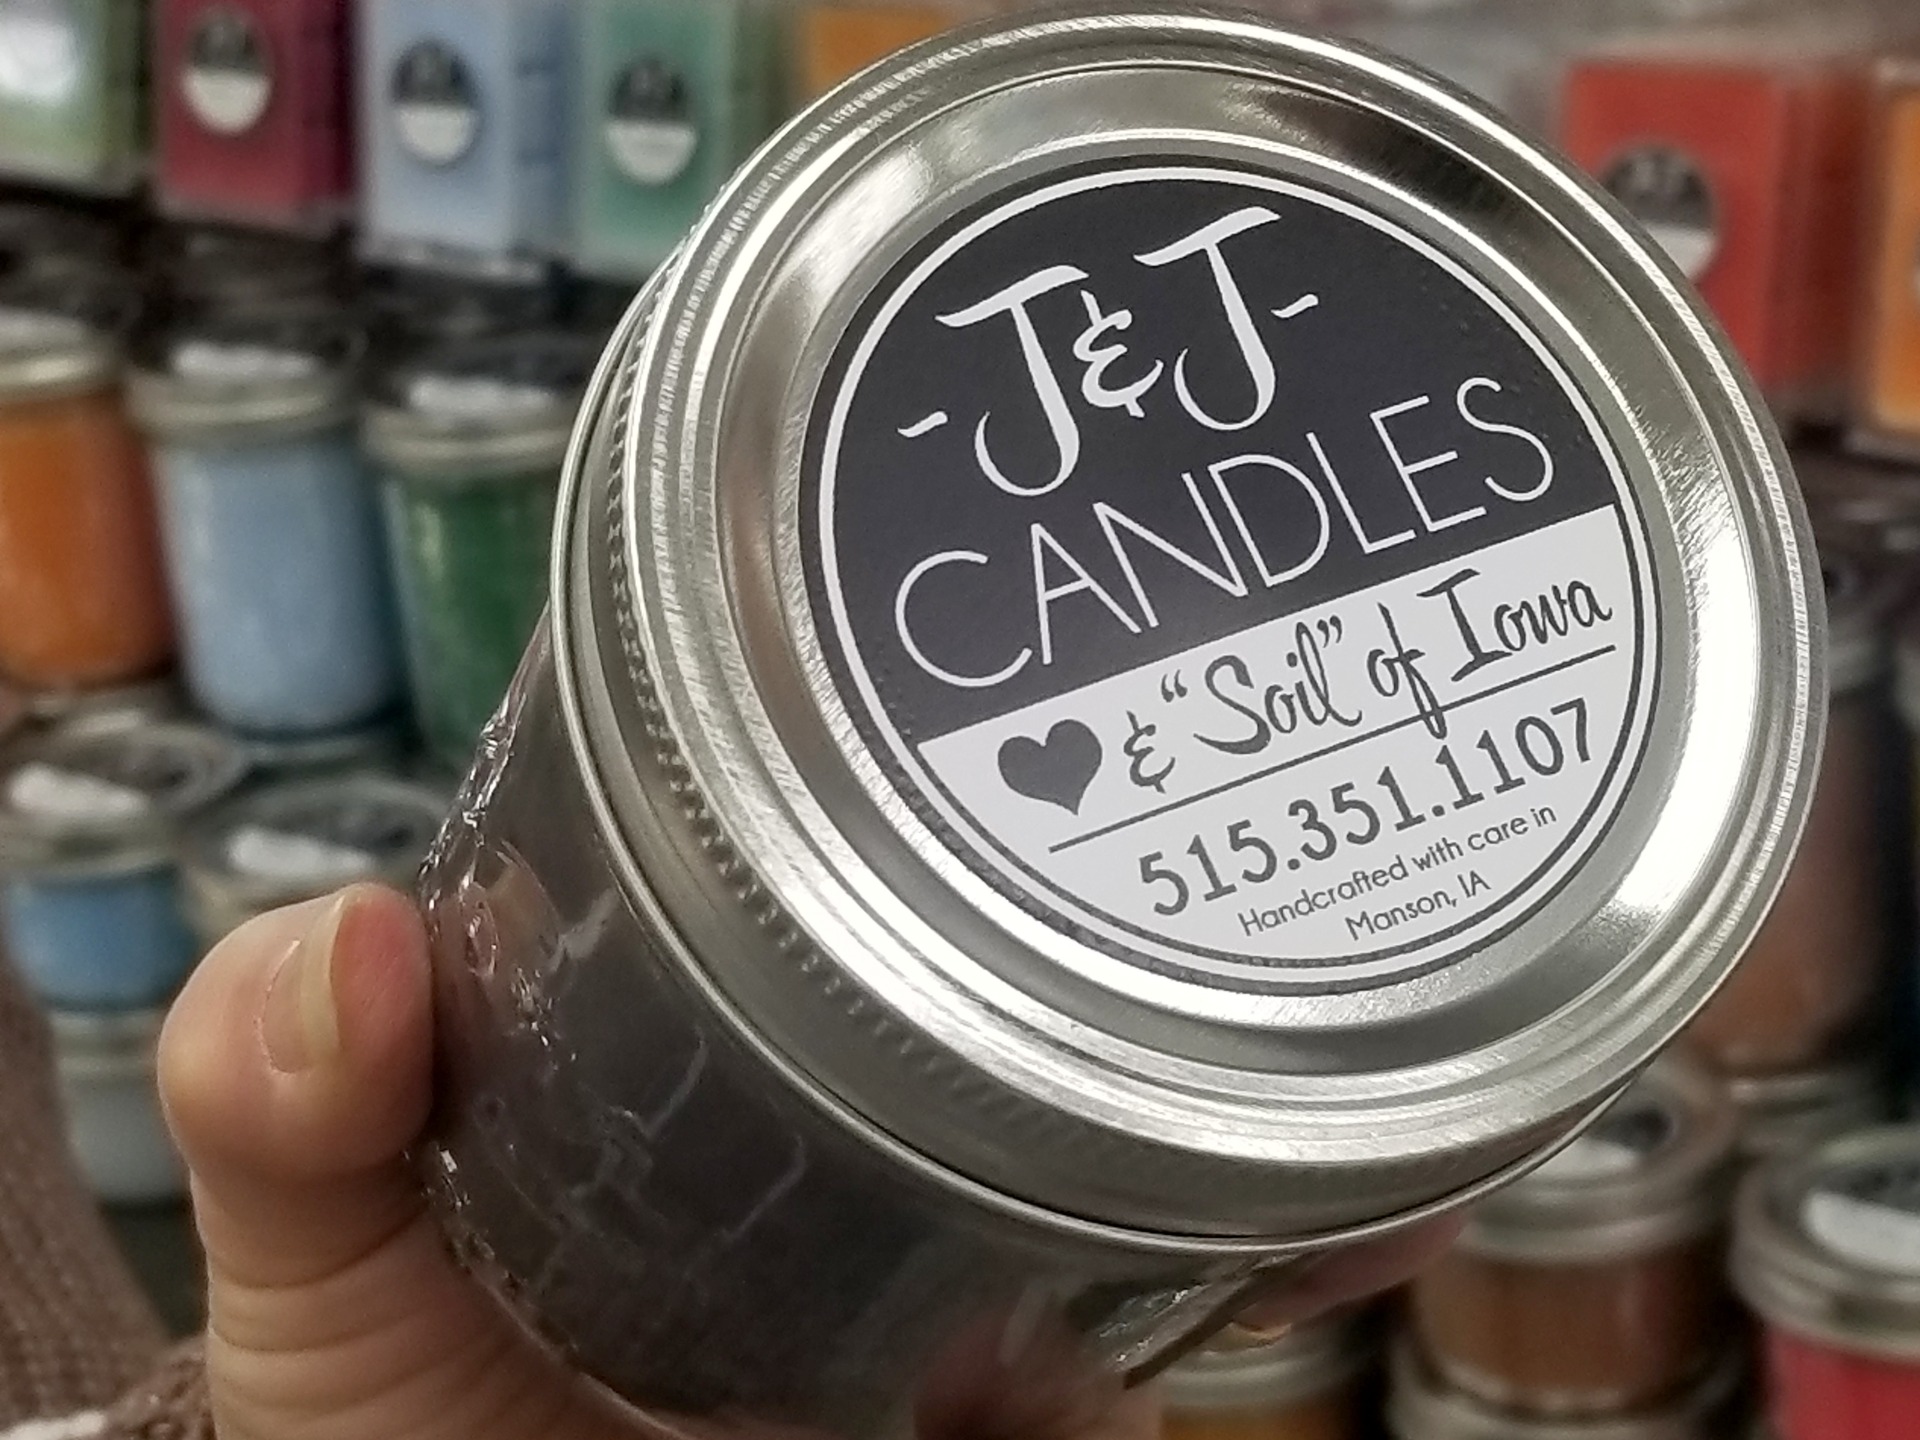 J & J Candles & Soil of Iowa